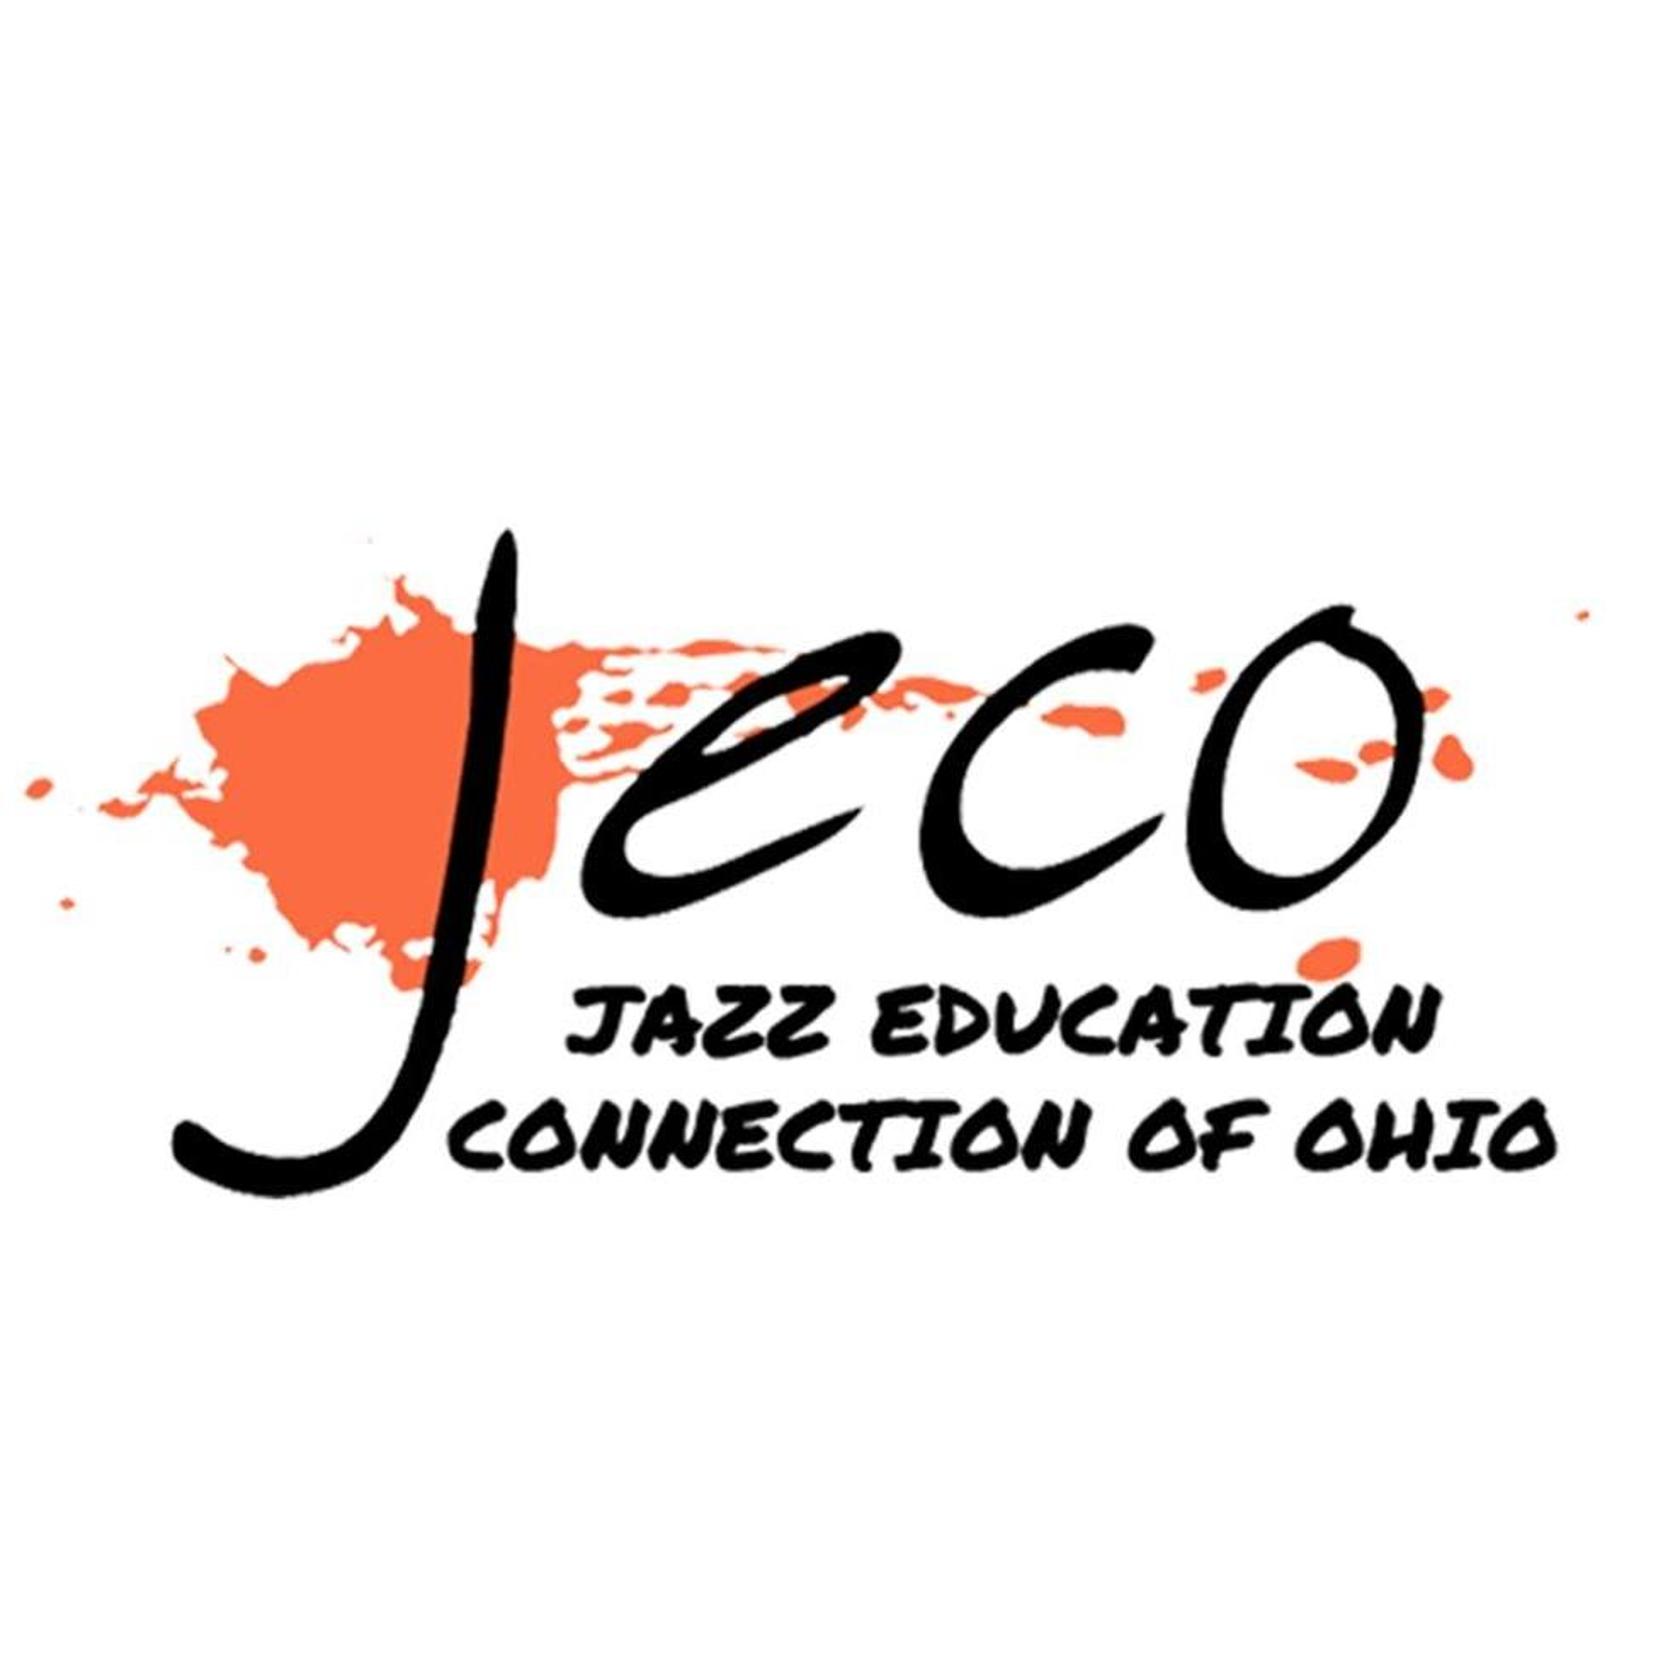 Jazz Education Connection of Ohio